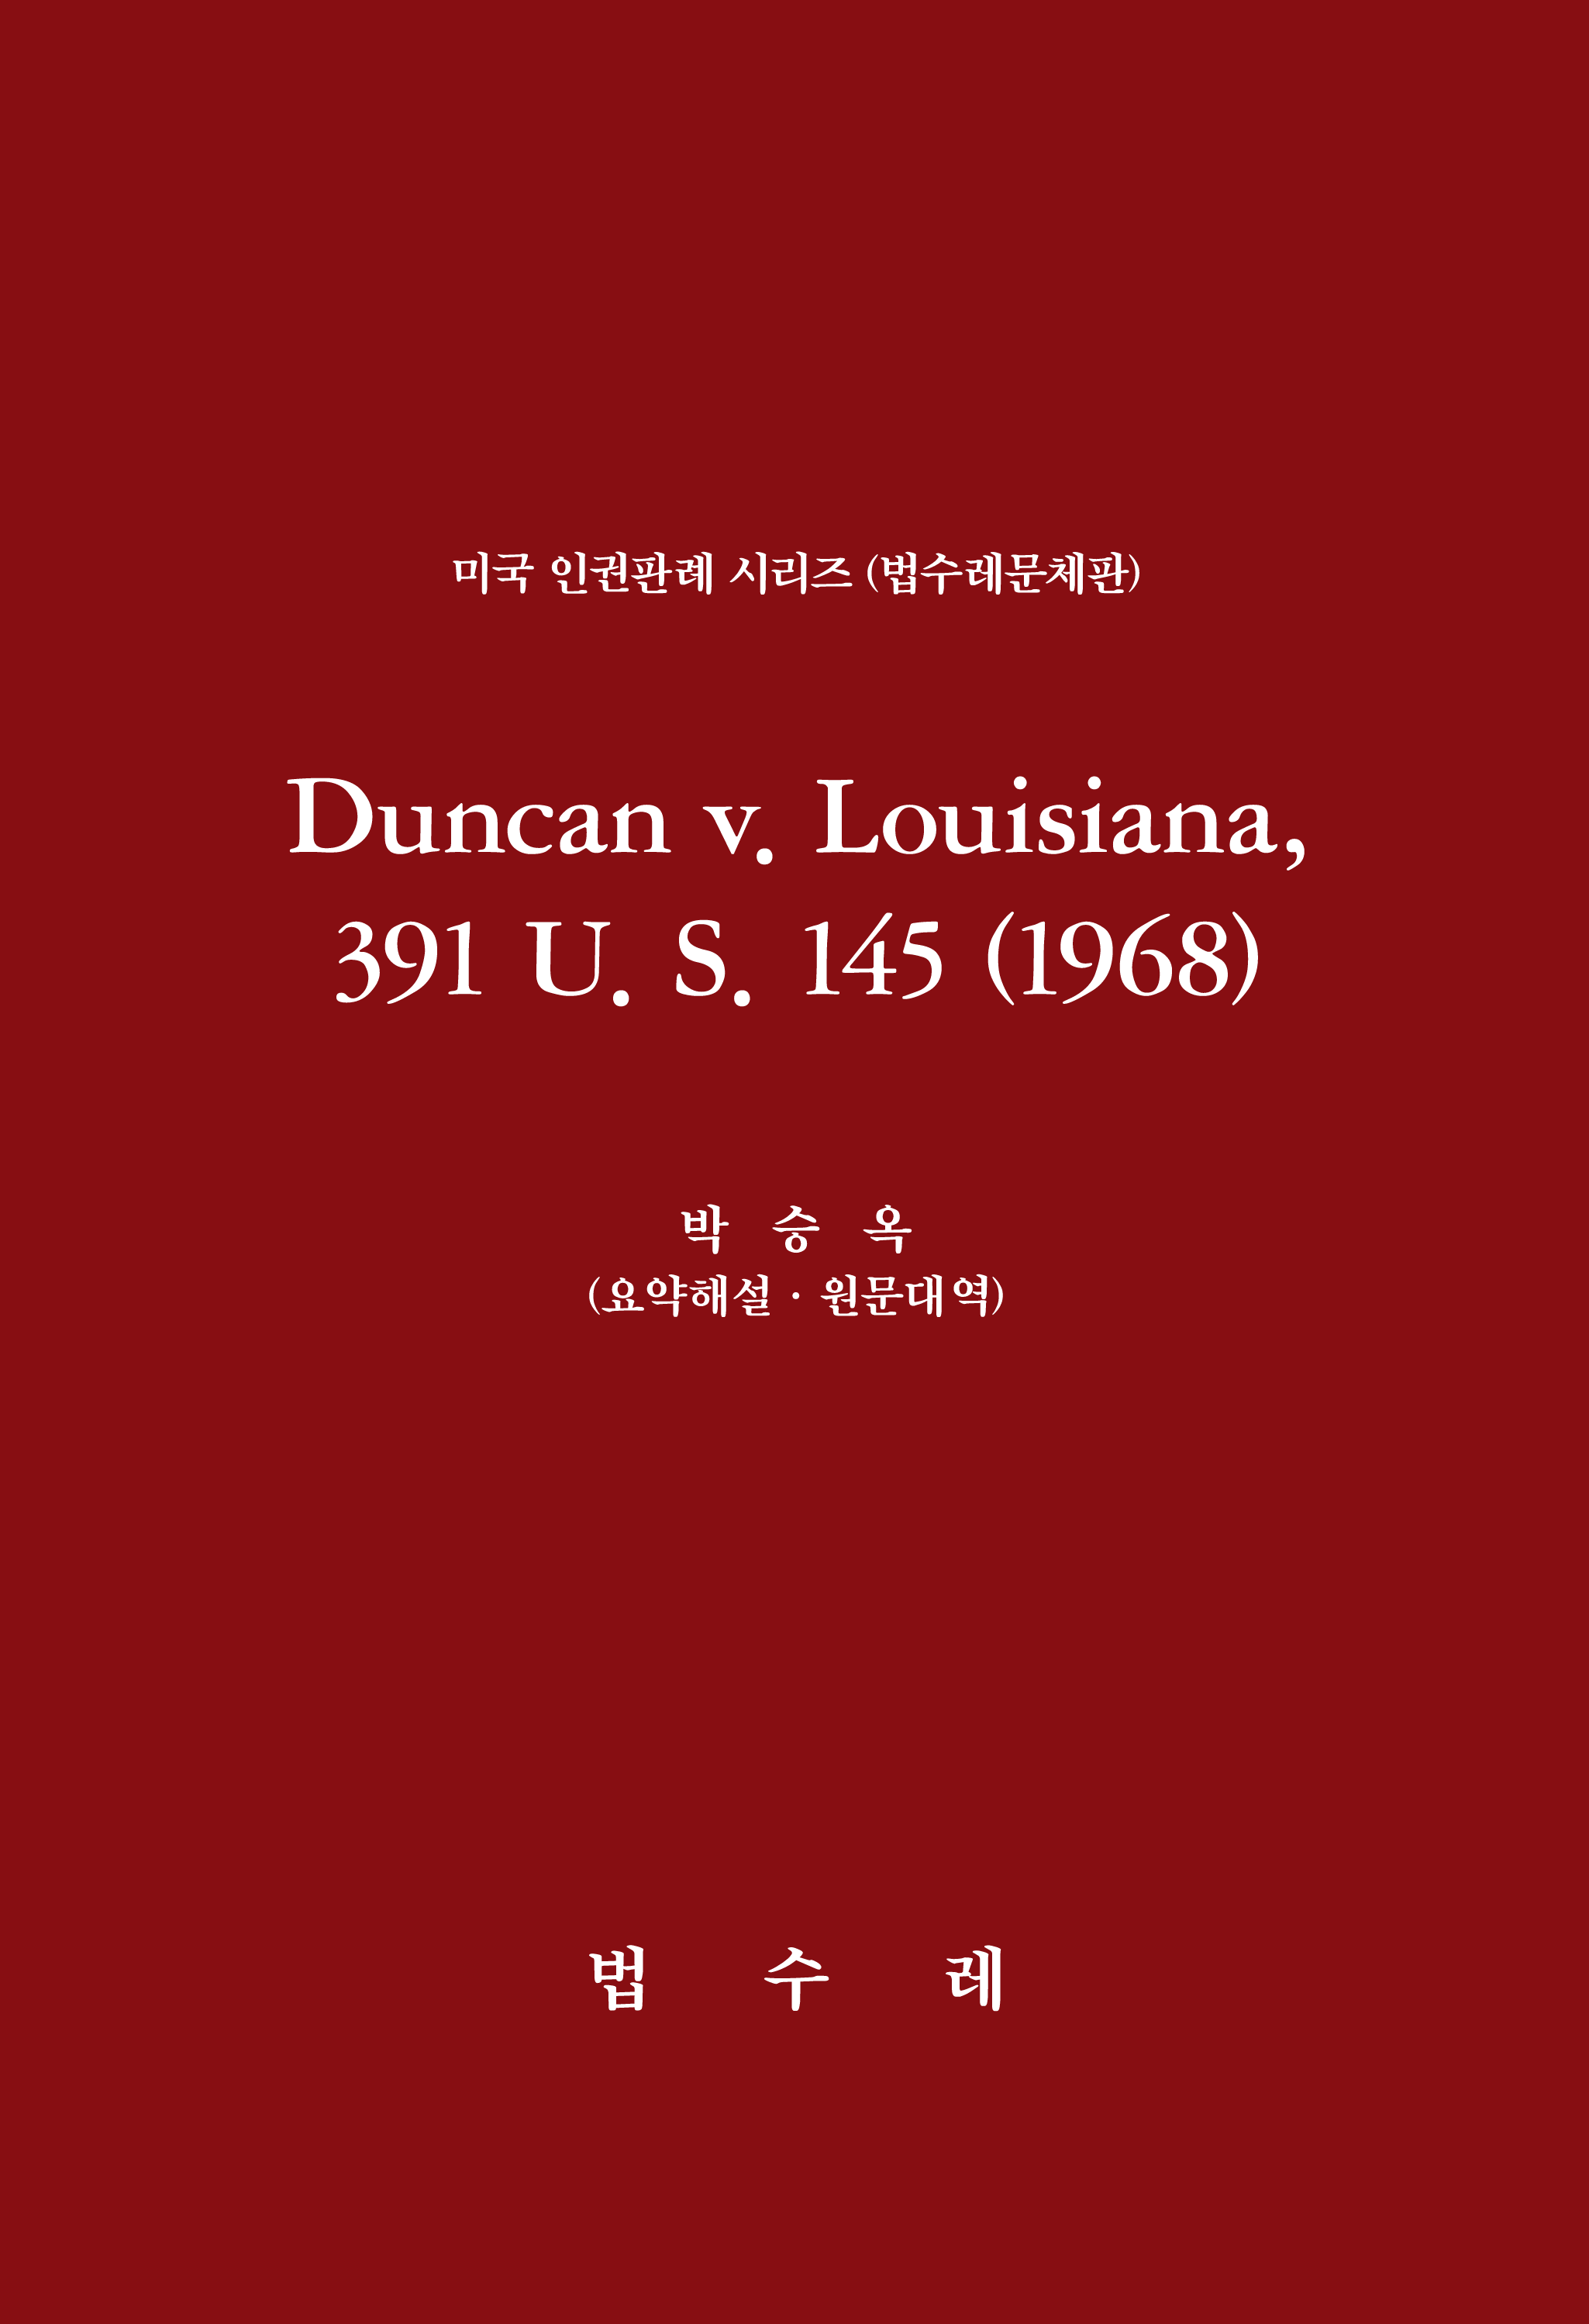 Duncan v. Louisiana, 391 U. S. 145 (1968)